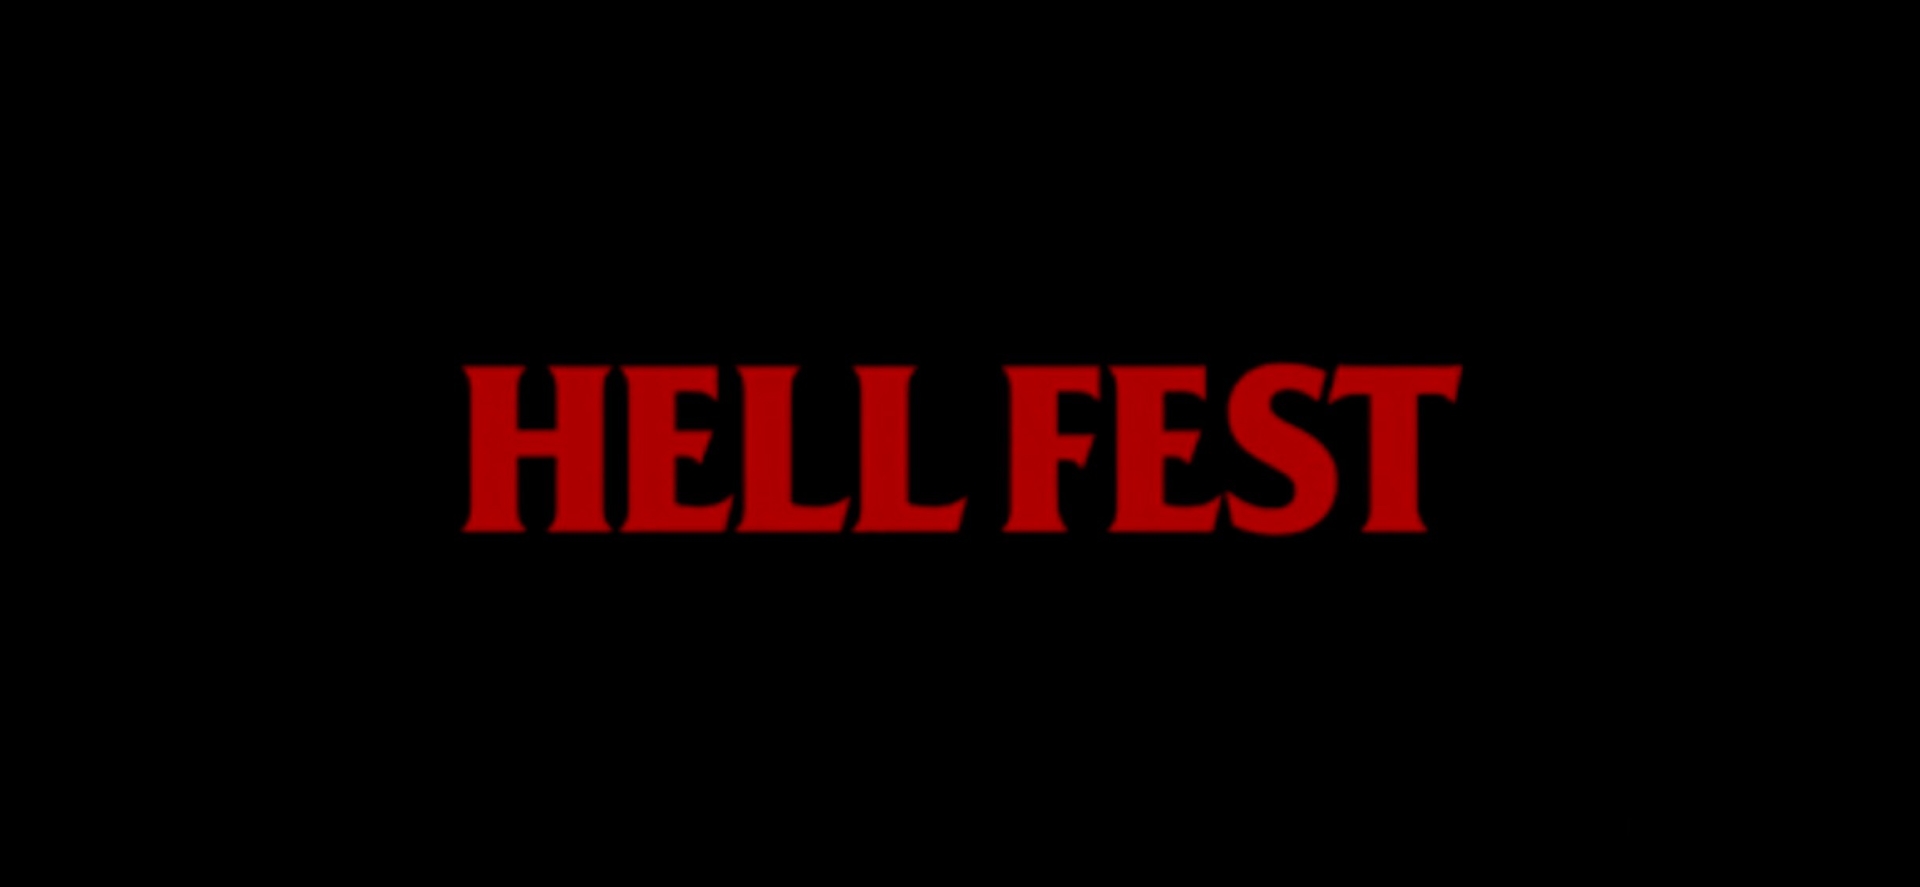 Hell Fest, terror entre terror